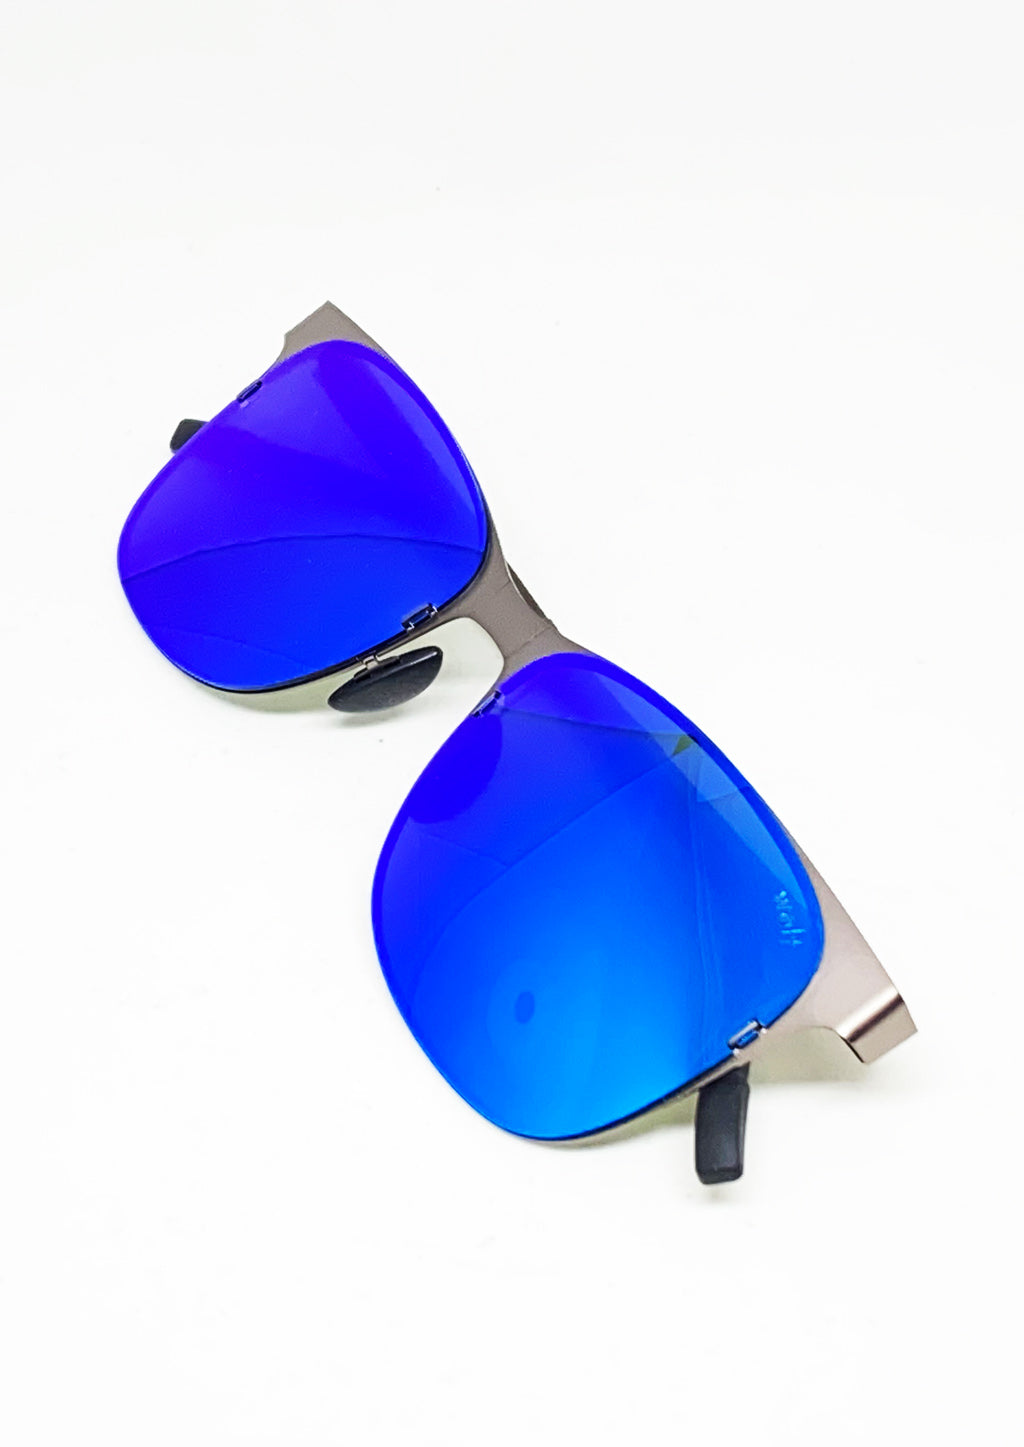 Rover - Faltbare Sonnenbrille mit Bluetooth-Hülle-Sonnenbrillen-linaliva.de